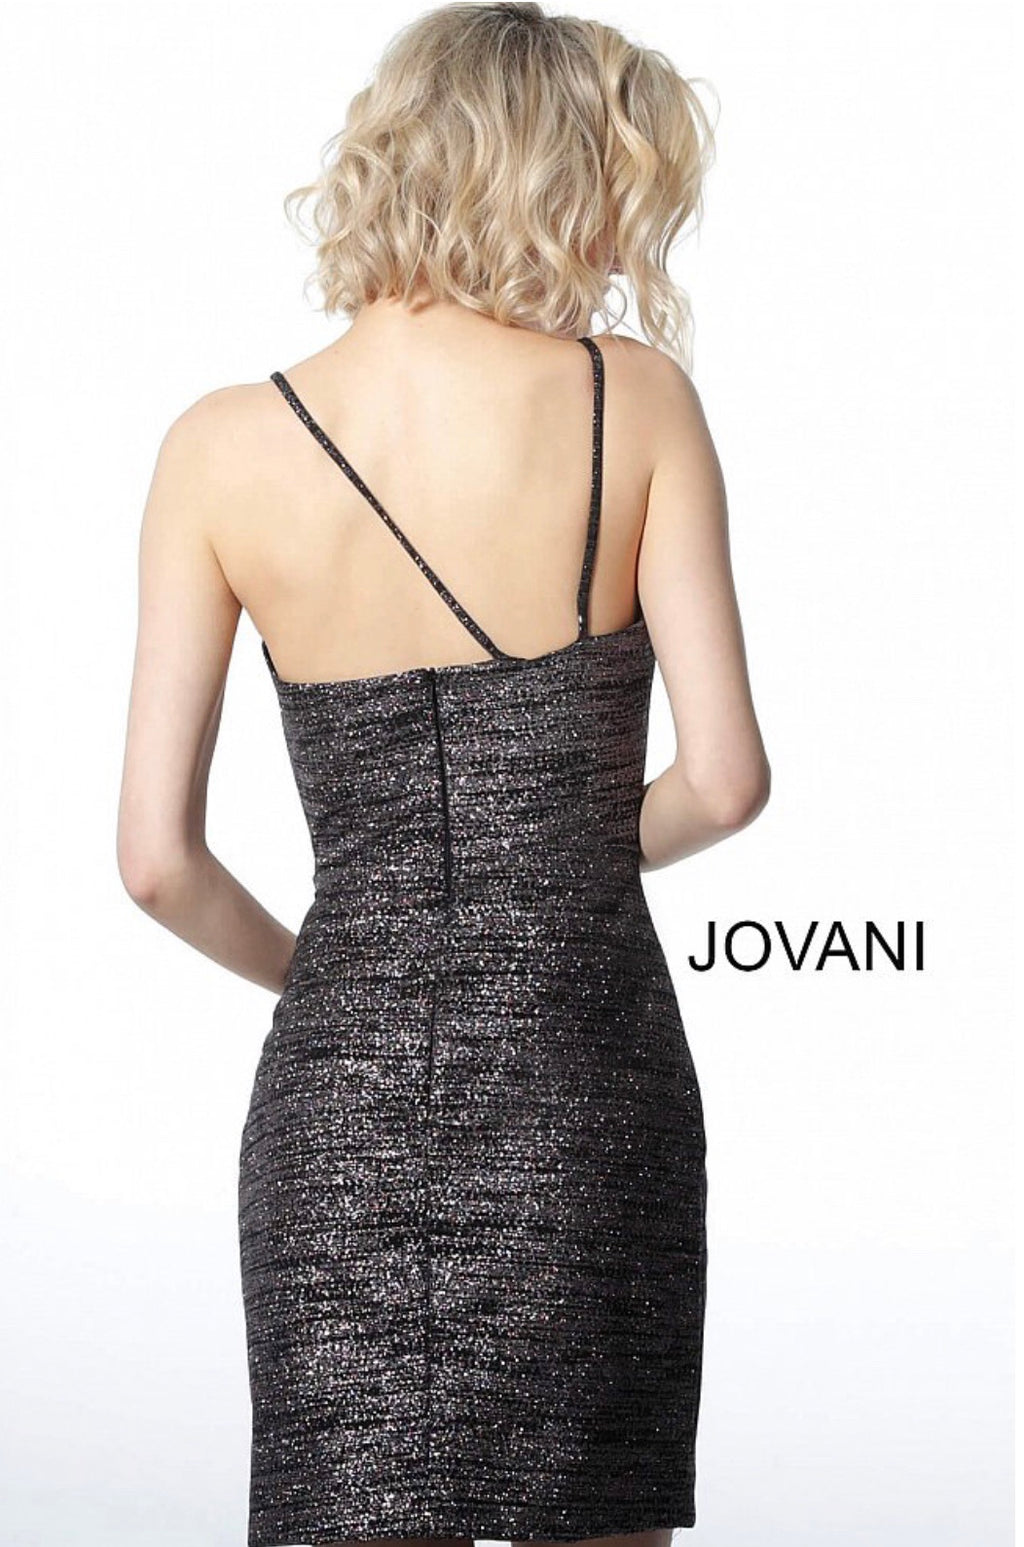 JOVANI 1128 Front Cut-Out Cocktail Dress - CYC Boutique